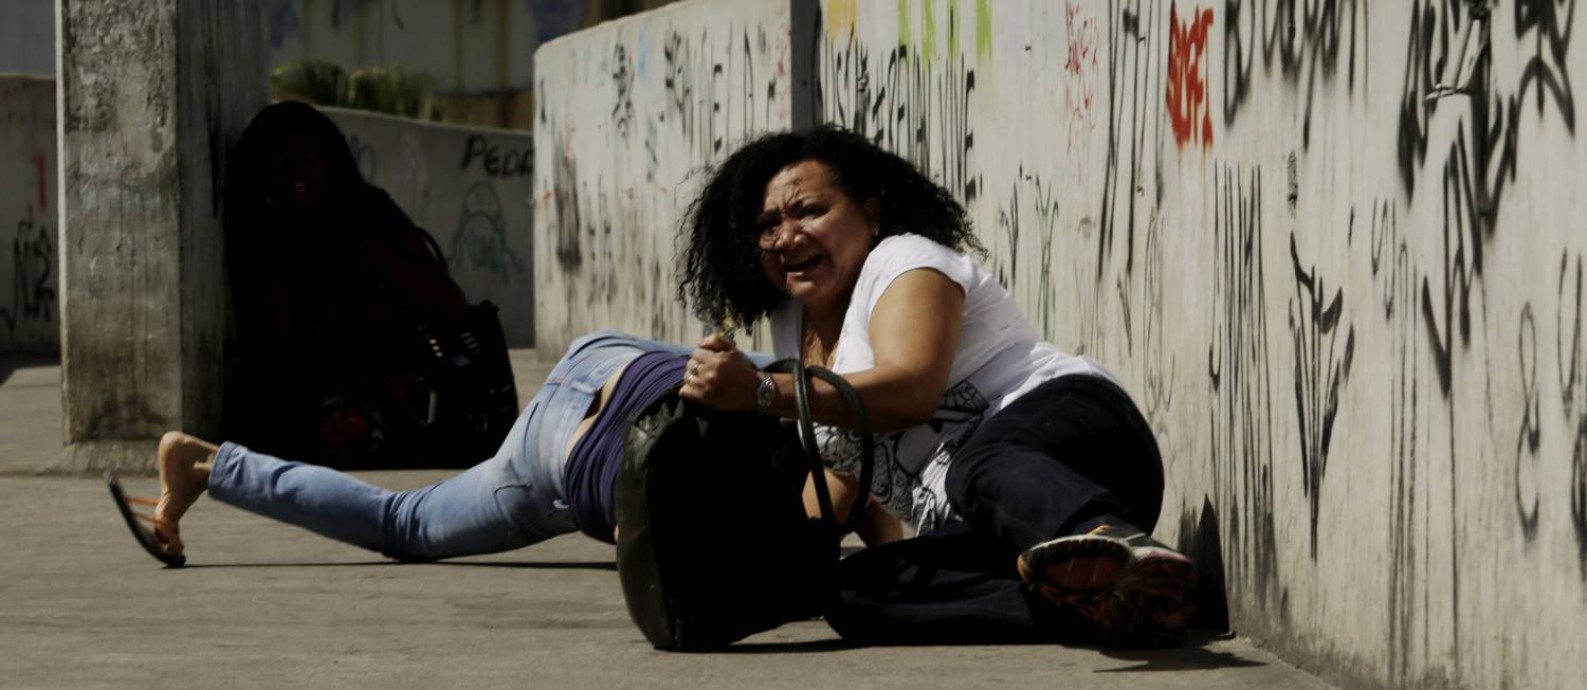 Mulheres se jogam no chão de passarela durante tiroteio na Rocinha Foto: Gabriel Paiva / Agência O Globo